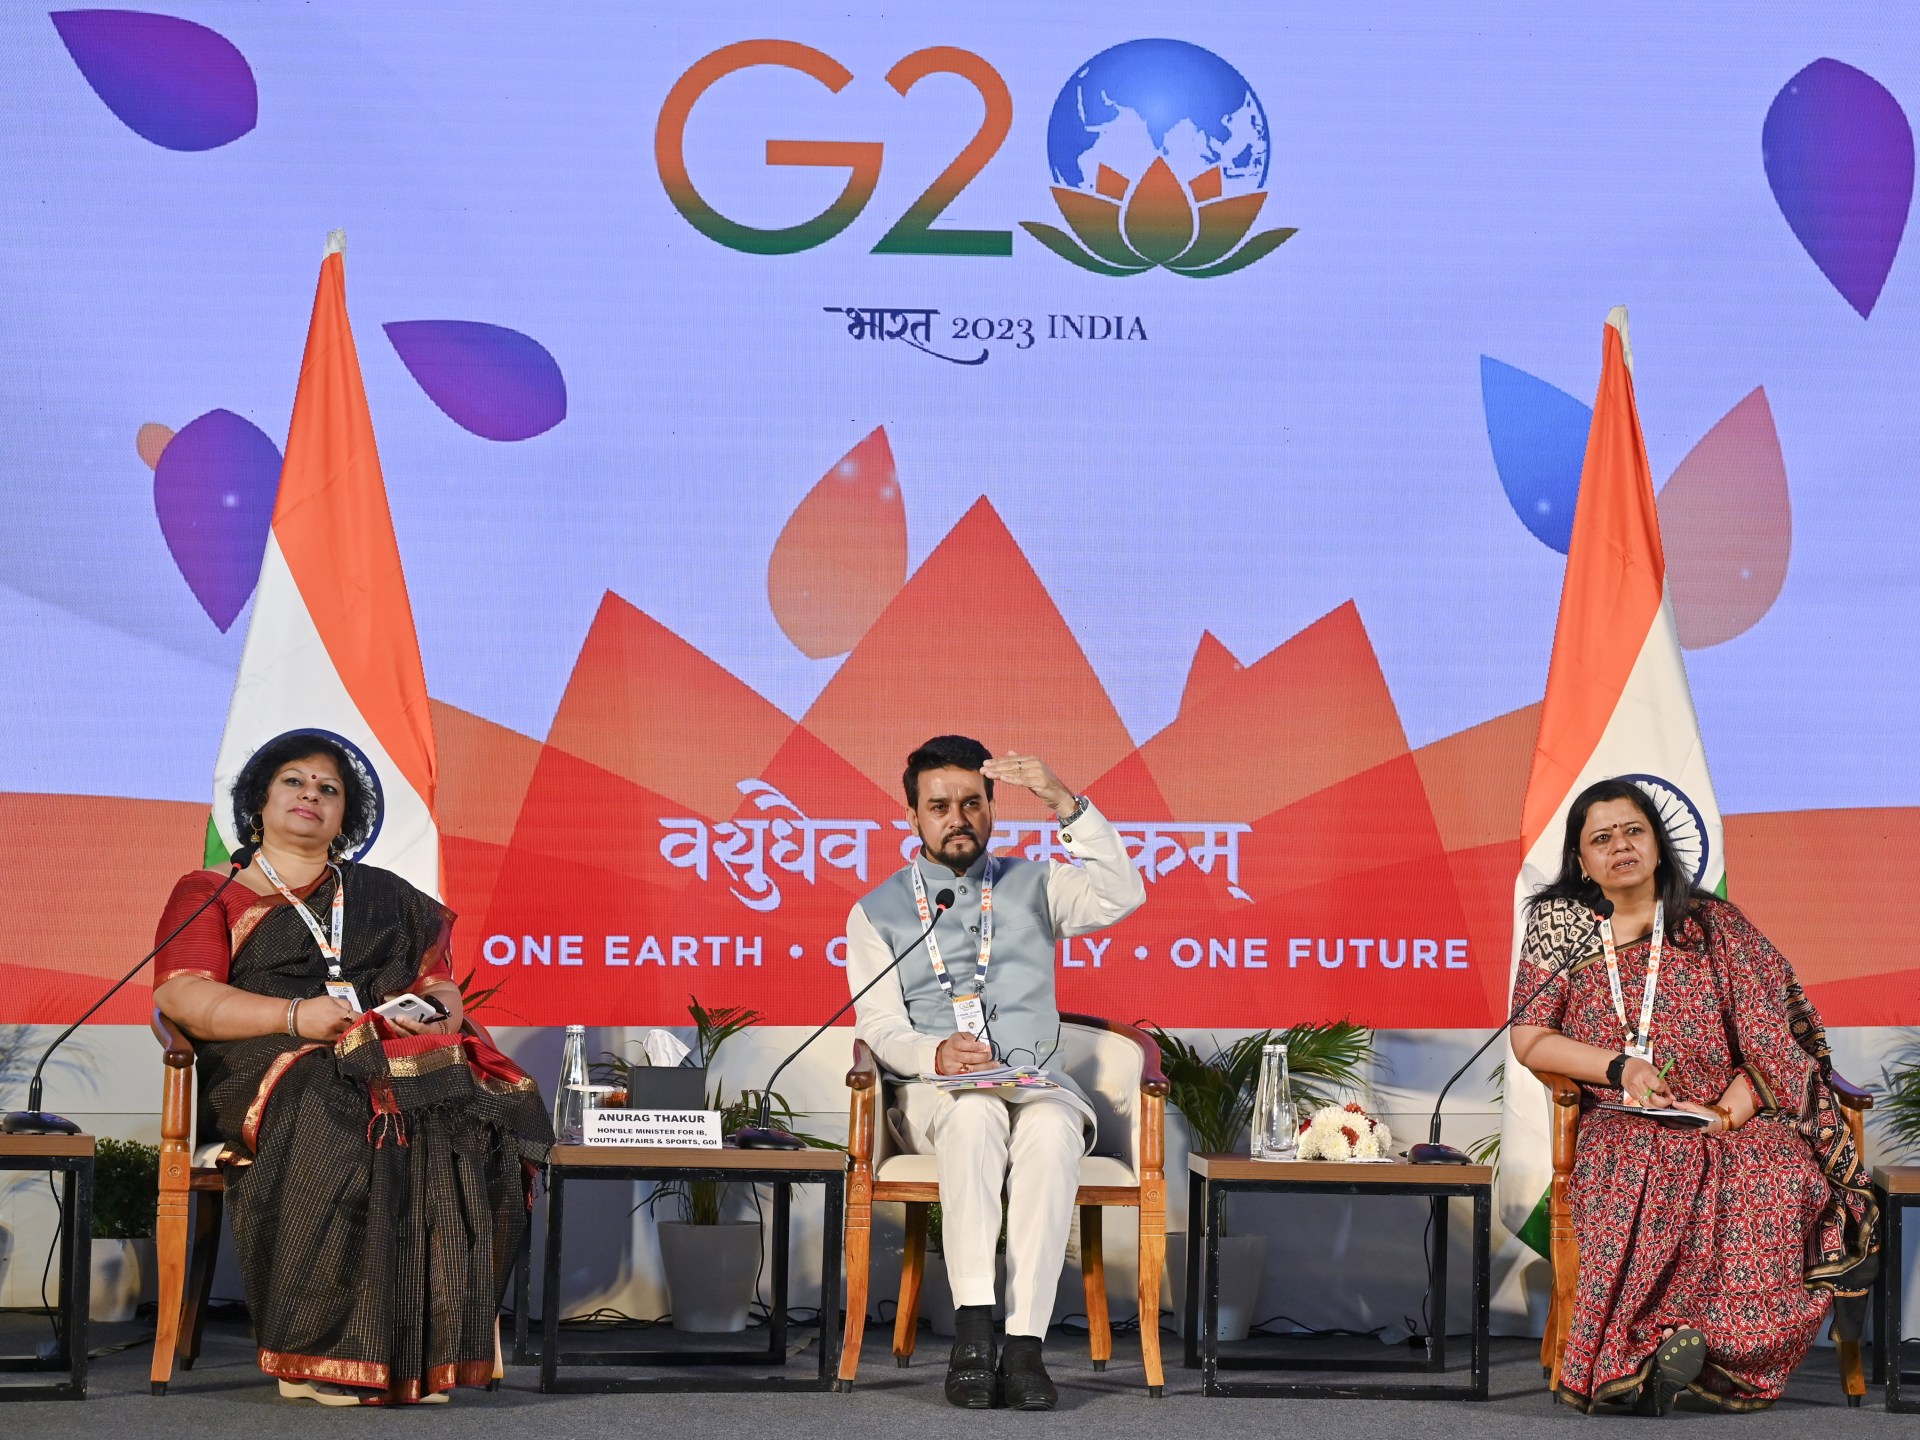 Bukan era perang, kata India saat pertemuan keuangan G20 dimulai |  Berita perang Rusia-Ukraina